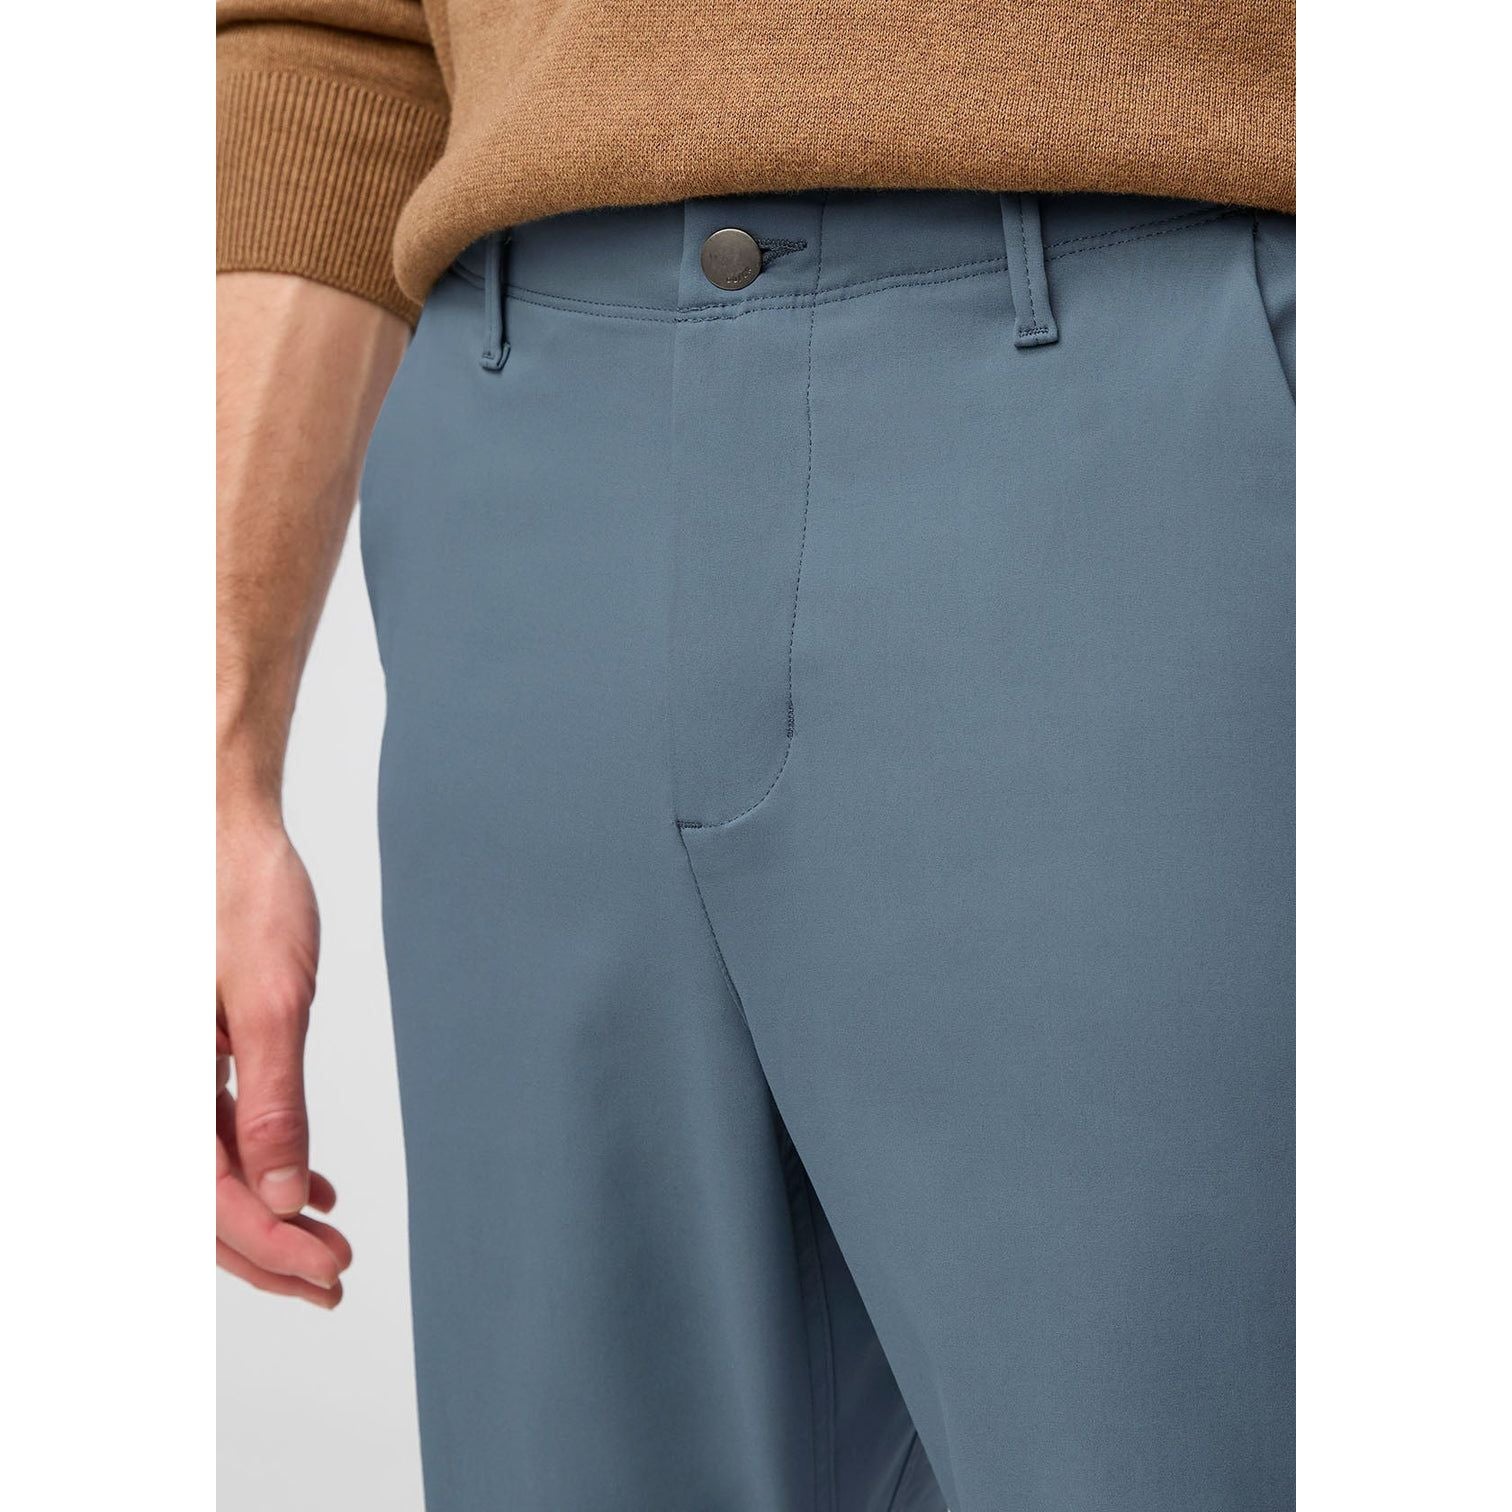 Pantalons NuStretch Flex pour Hommes||NuStretch Flex Pant for Men's